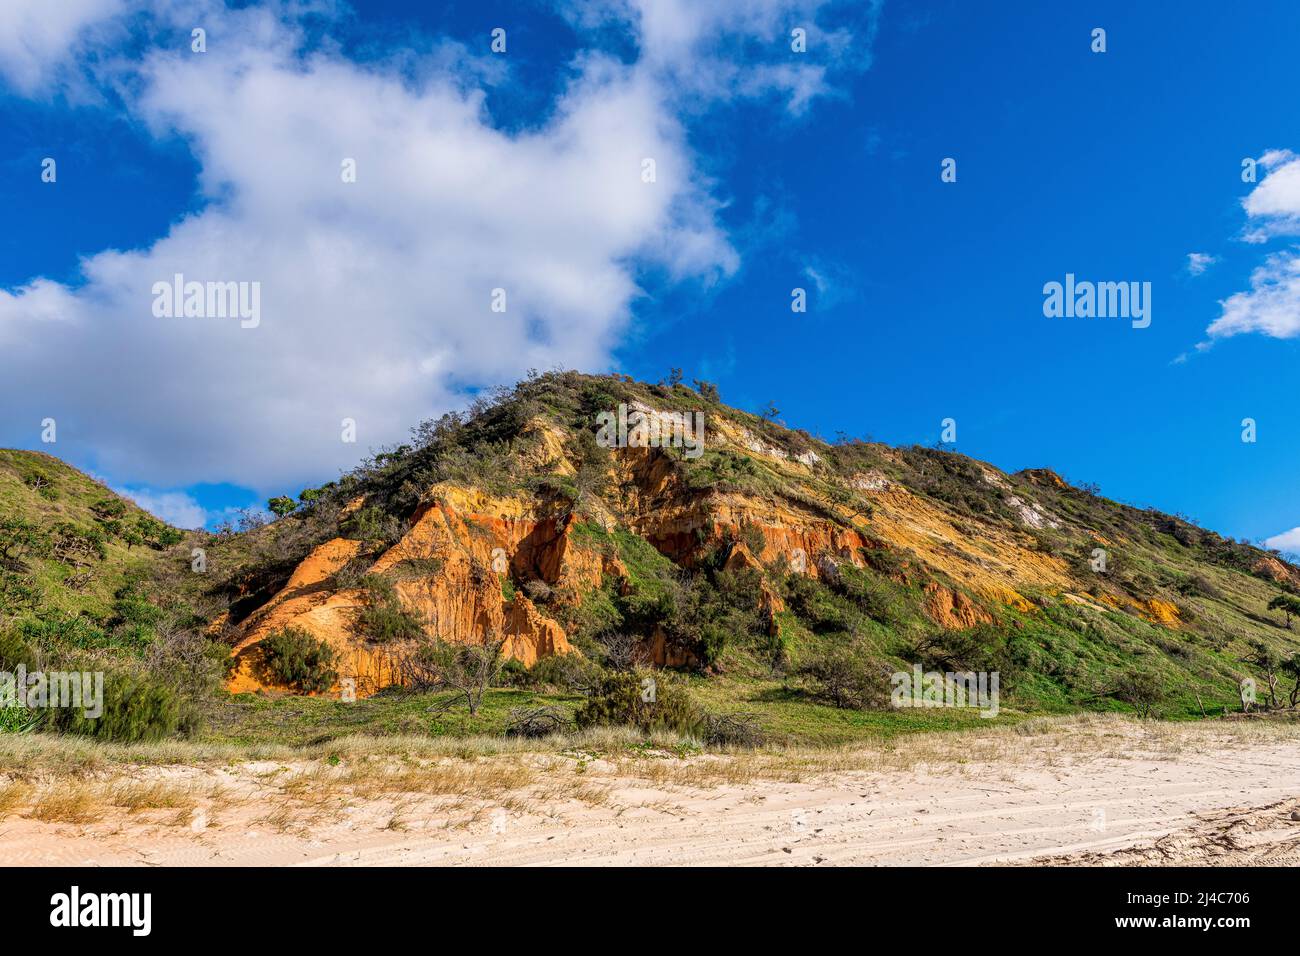 Red Canyon est une section de dunes de sable colorées sur la côte est, le long de la plage de soixante-dix Five Mile Beach sur Fraser Island, Queensland, Australie Banque D'Images